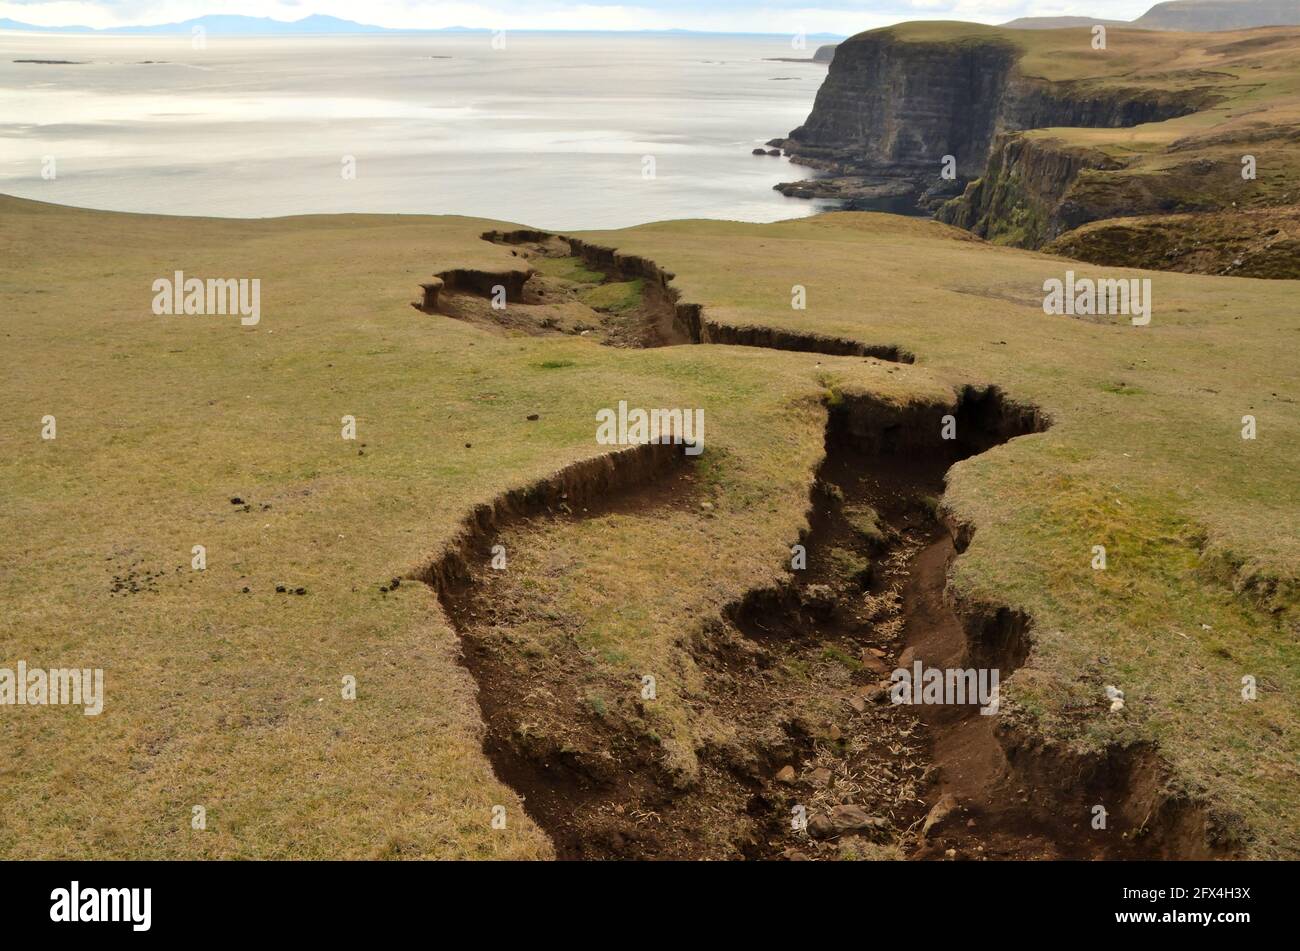 Una grande spaccatura nel terreno sopra le scogliere del mare sulla costa occidentale dell'Isola di Skye, Scozia, Isole Britanniche. Foto Stock